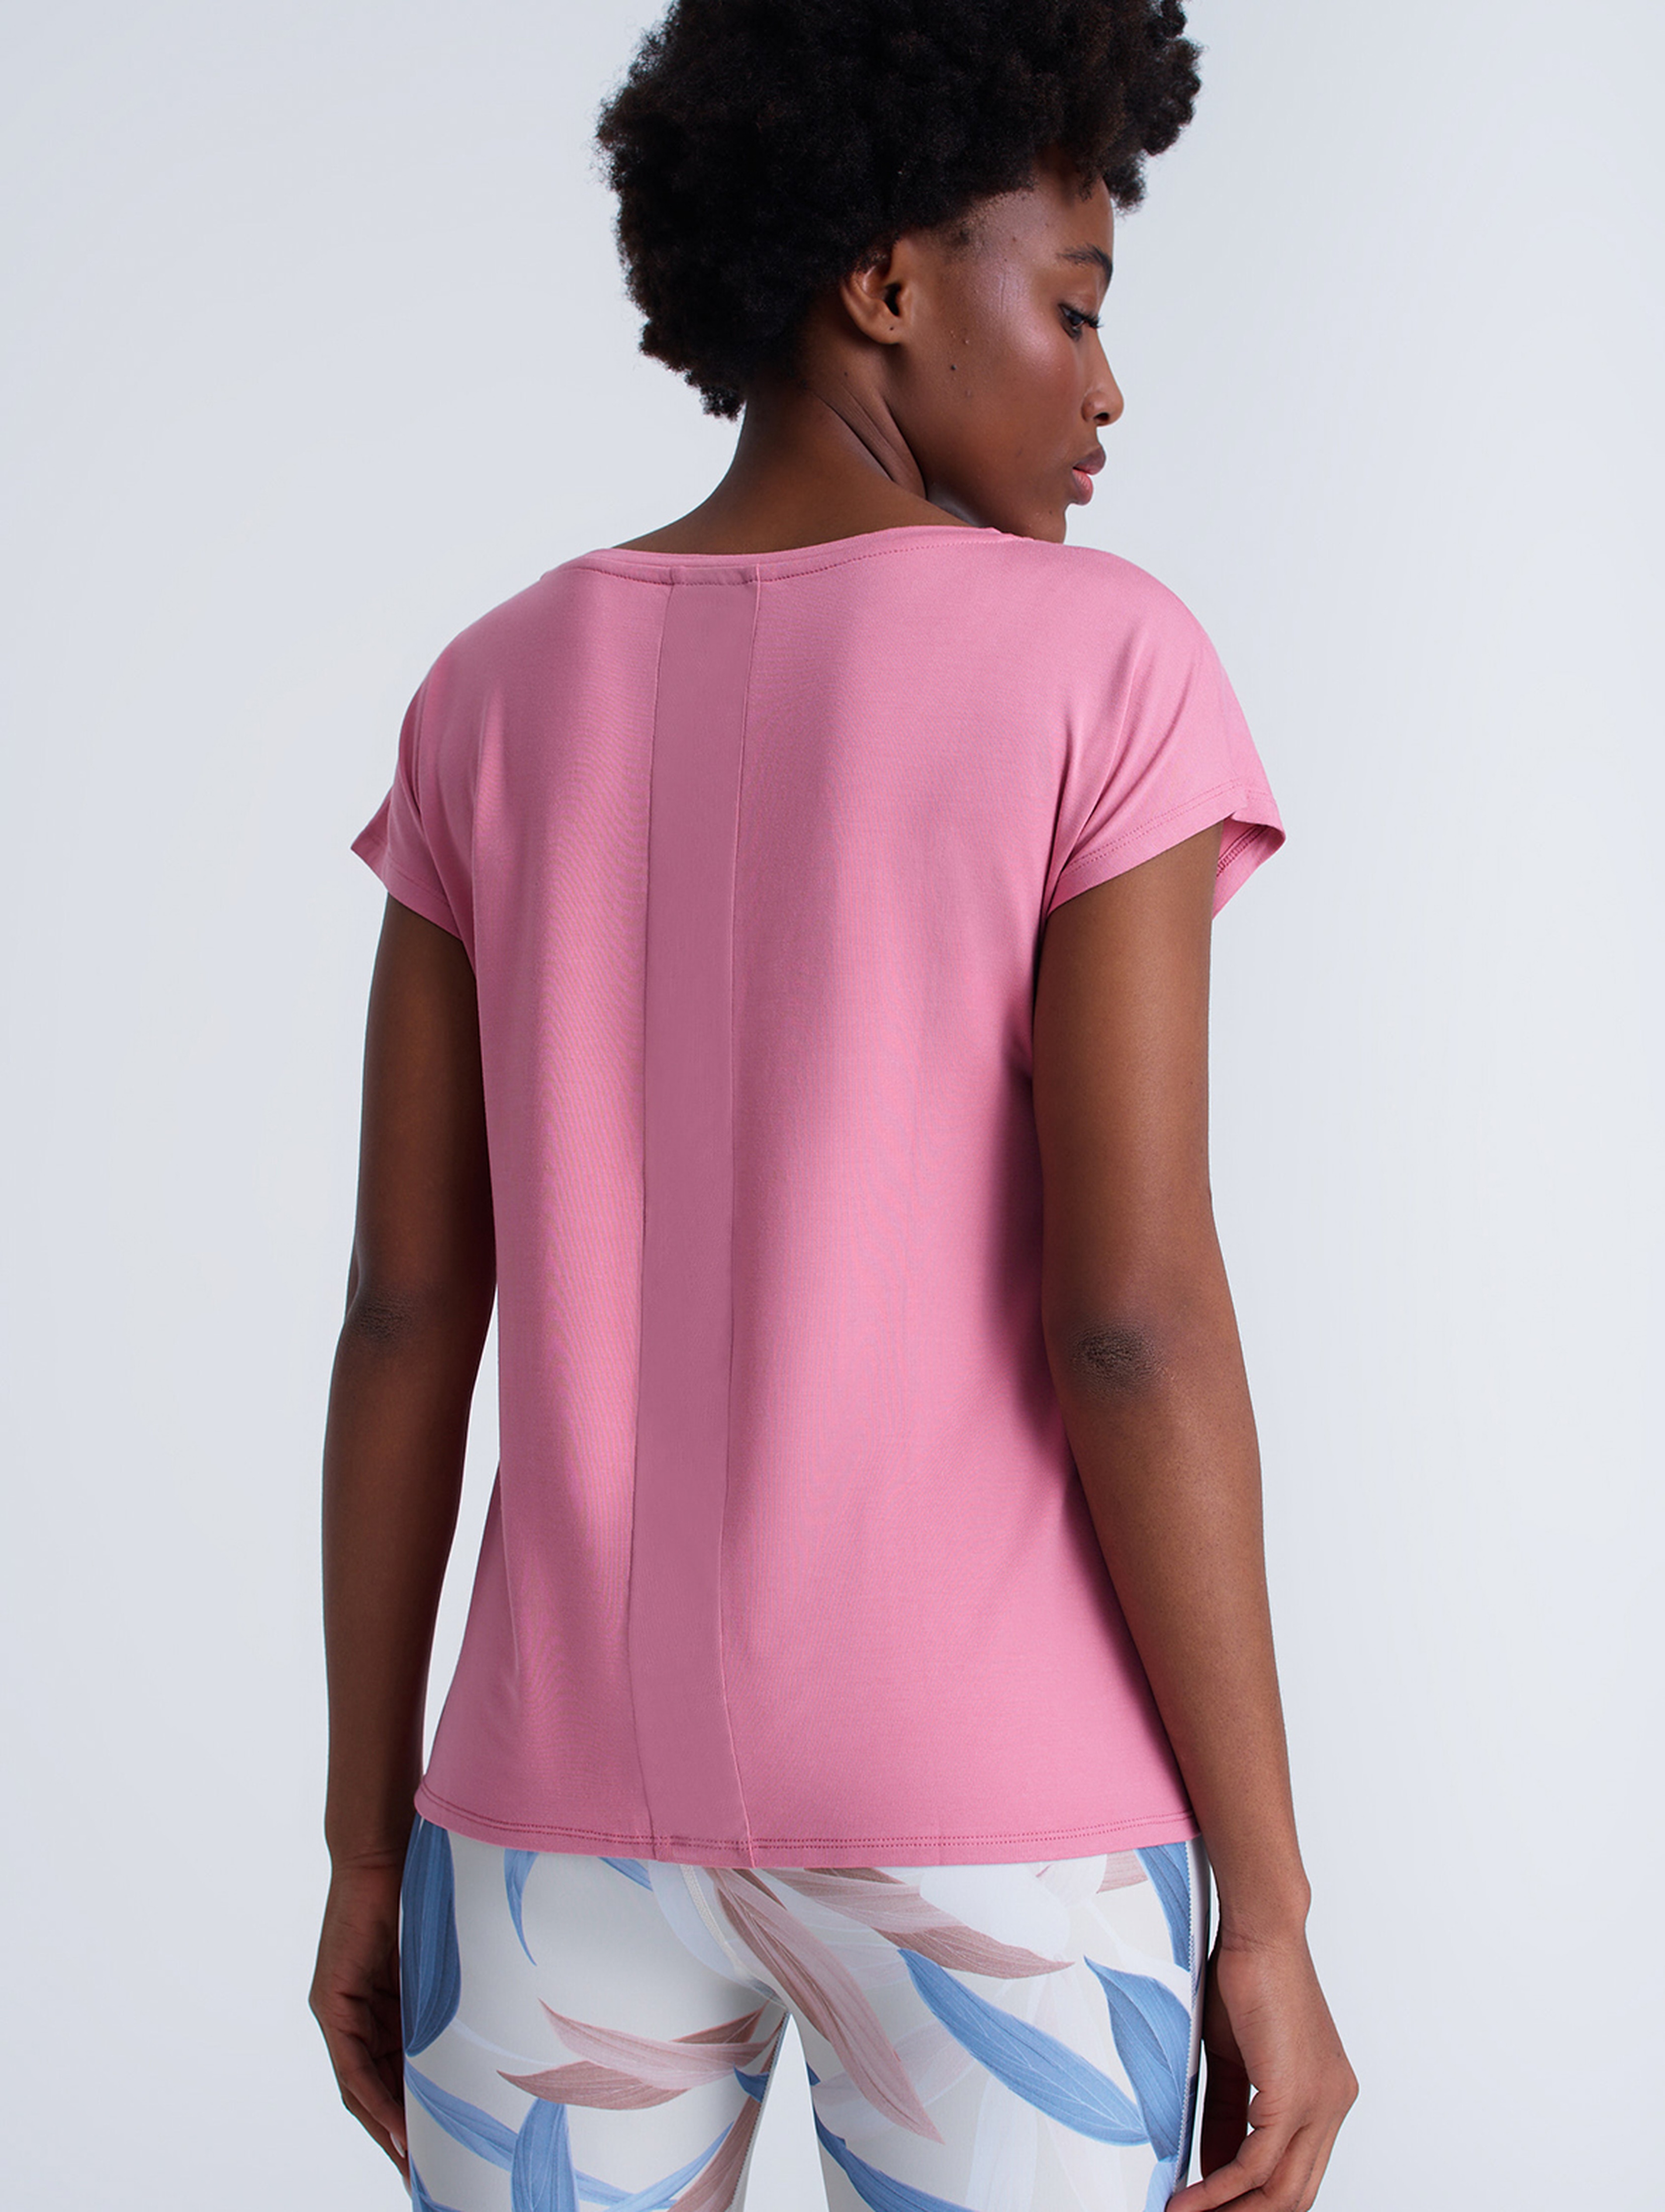 Koszulka damska z przezroczystymi wstawkami rożowa